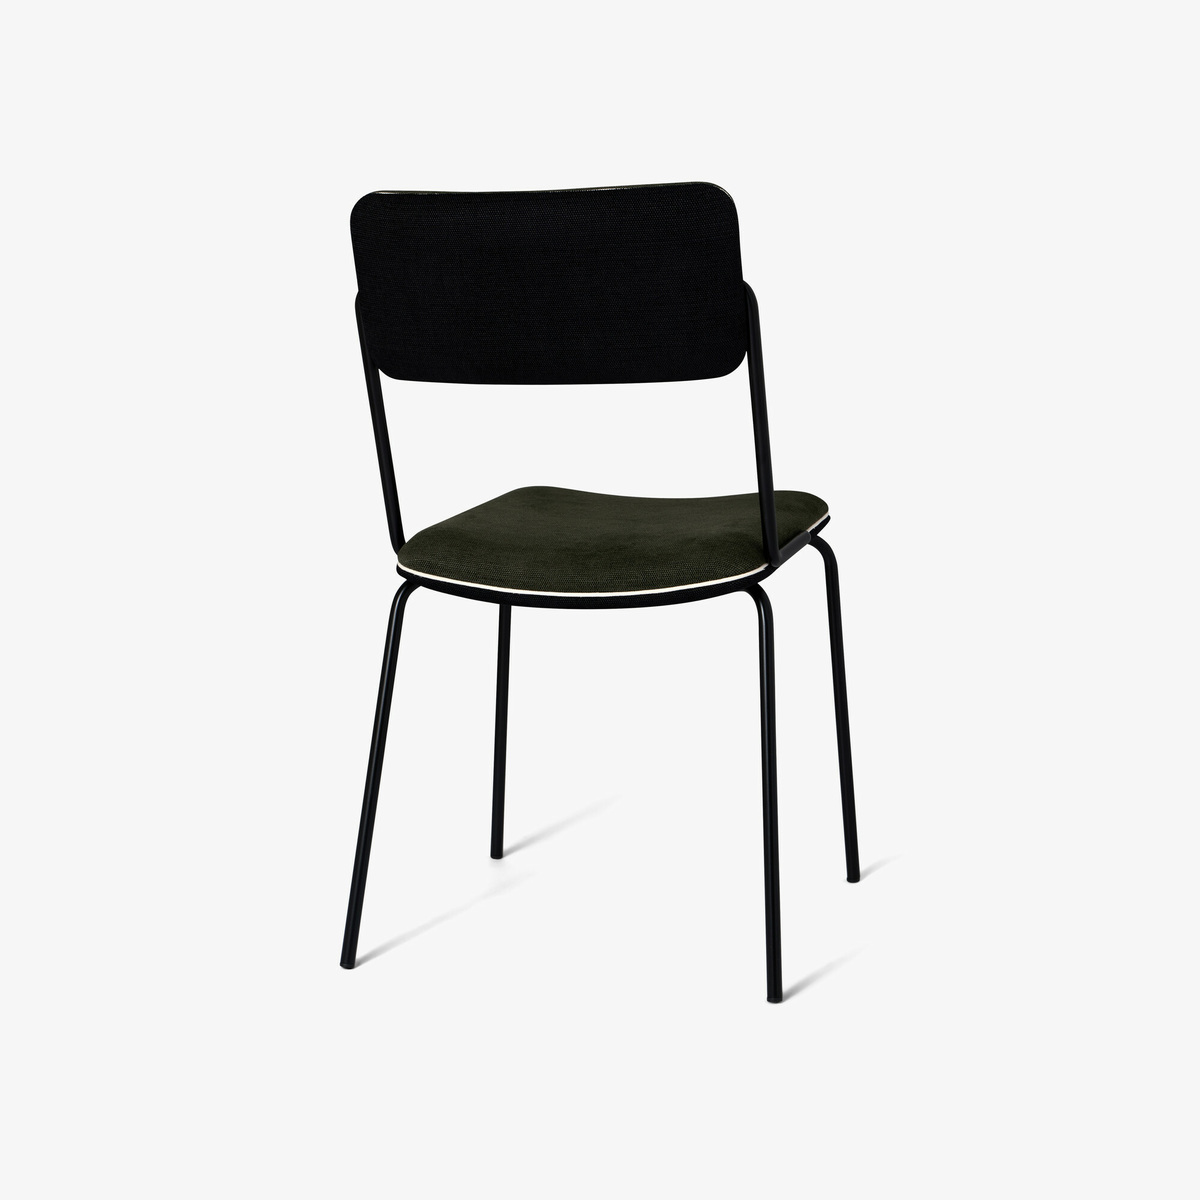 Chair Double Jeu, Green / Black - H85 x W51 x D43 cm - Cotton - image 4